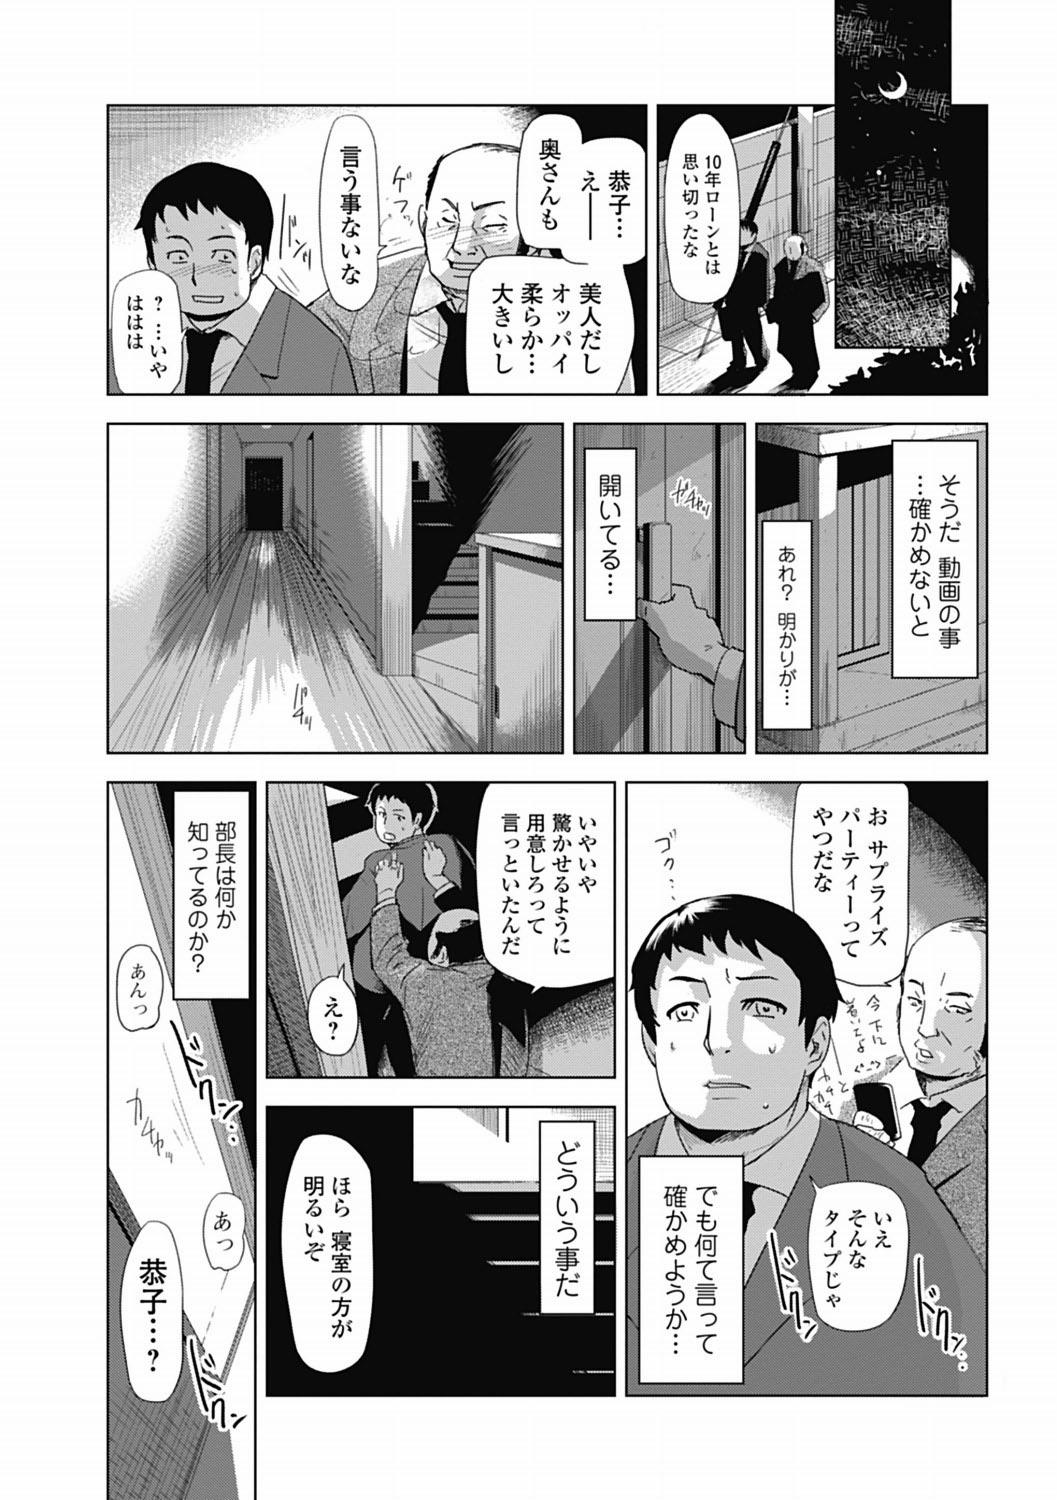 Bishoujo Kakumei KIWAME 2012-04 Vol.19 179